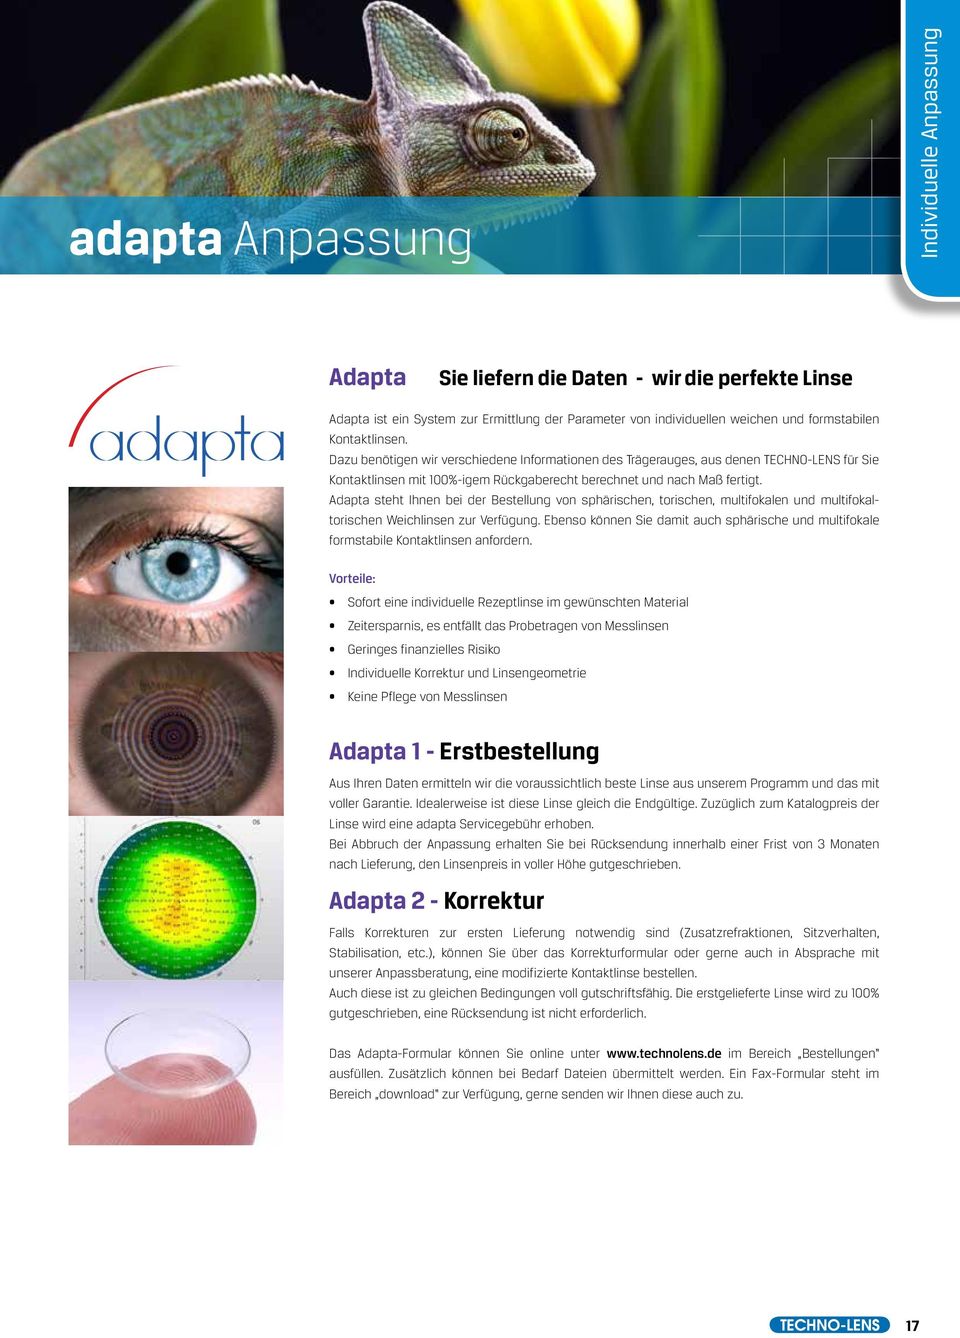 Adapta steht Ihnen bei der Bestellung von sphärischen, torischen, multifokalen und multifokaltorischen Weichlinsen zur Verfügung.